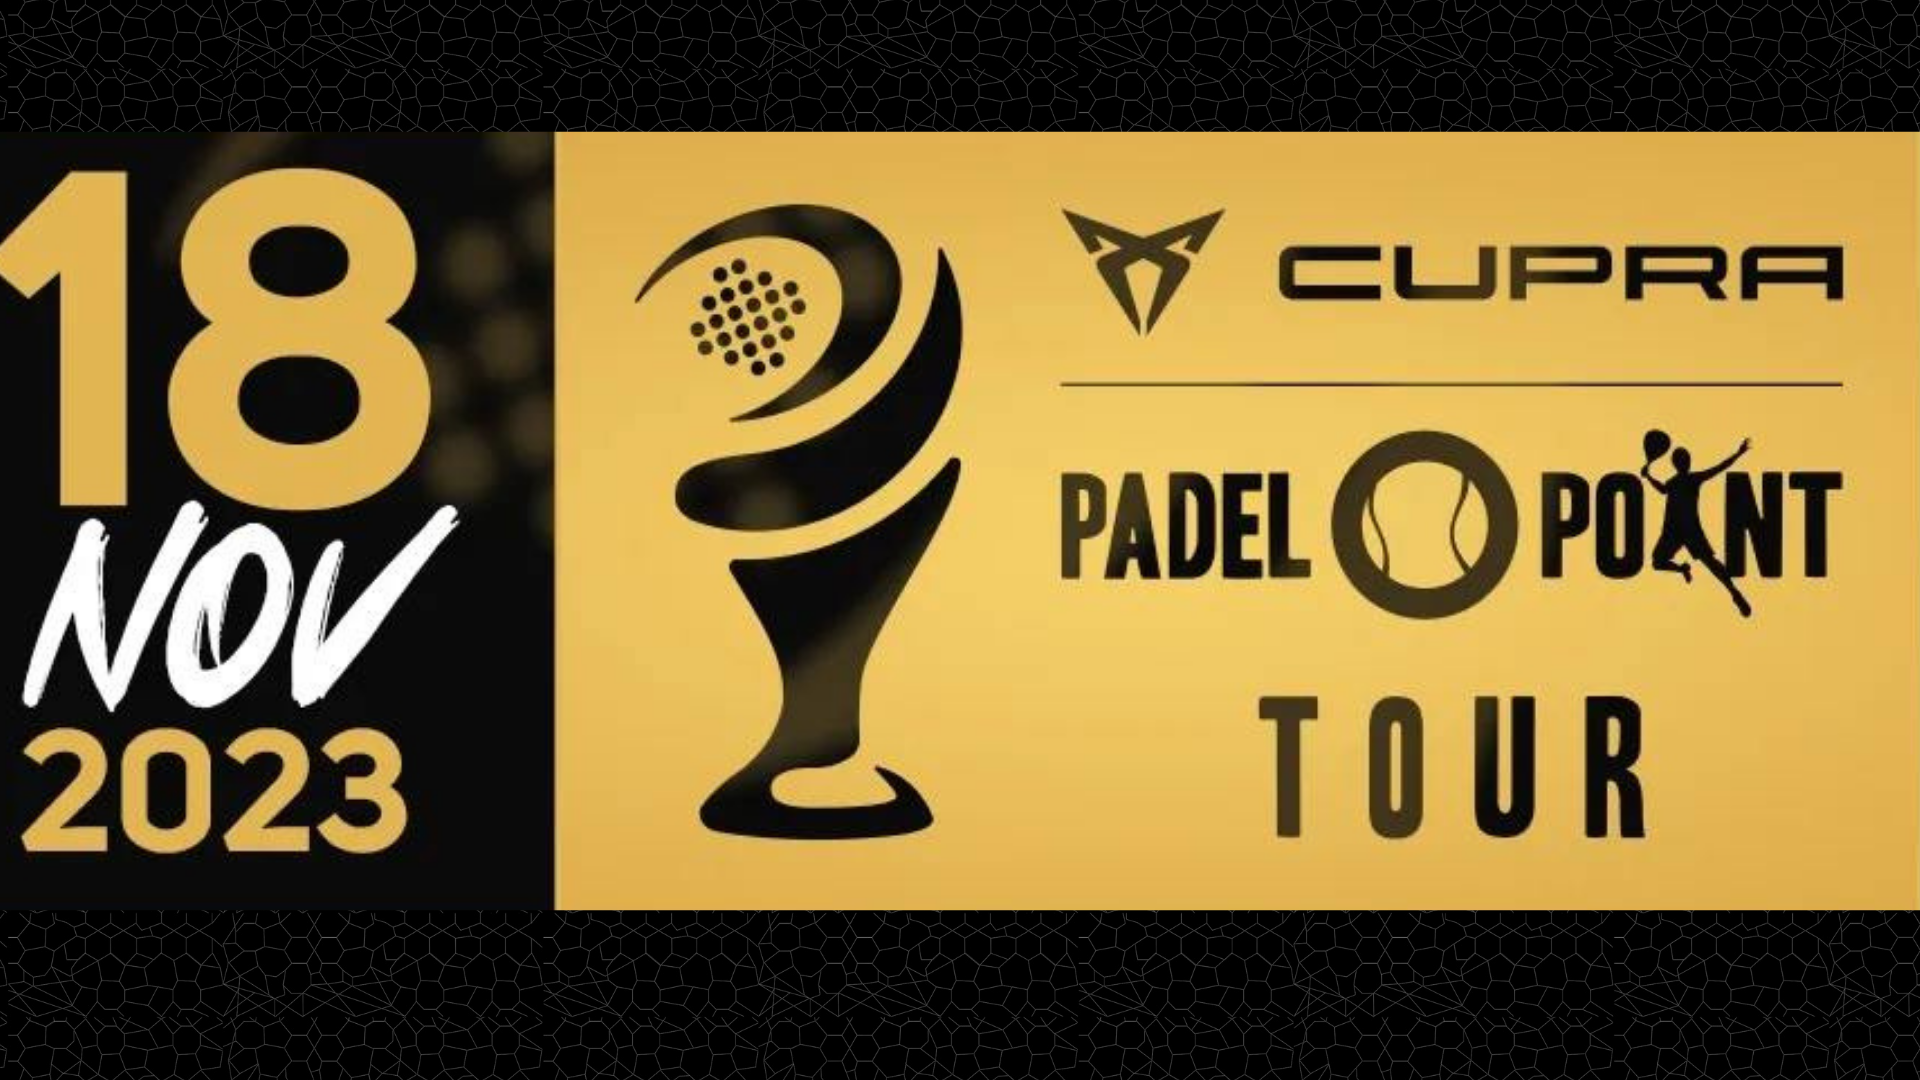 Final do Master Cupra Padel Point tour 2023 18 de novembro